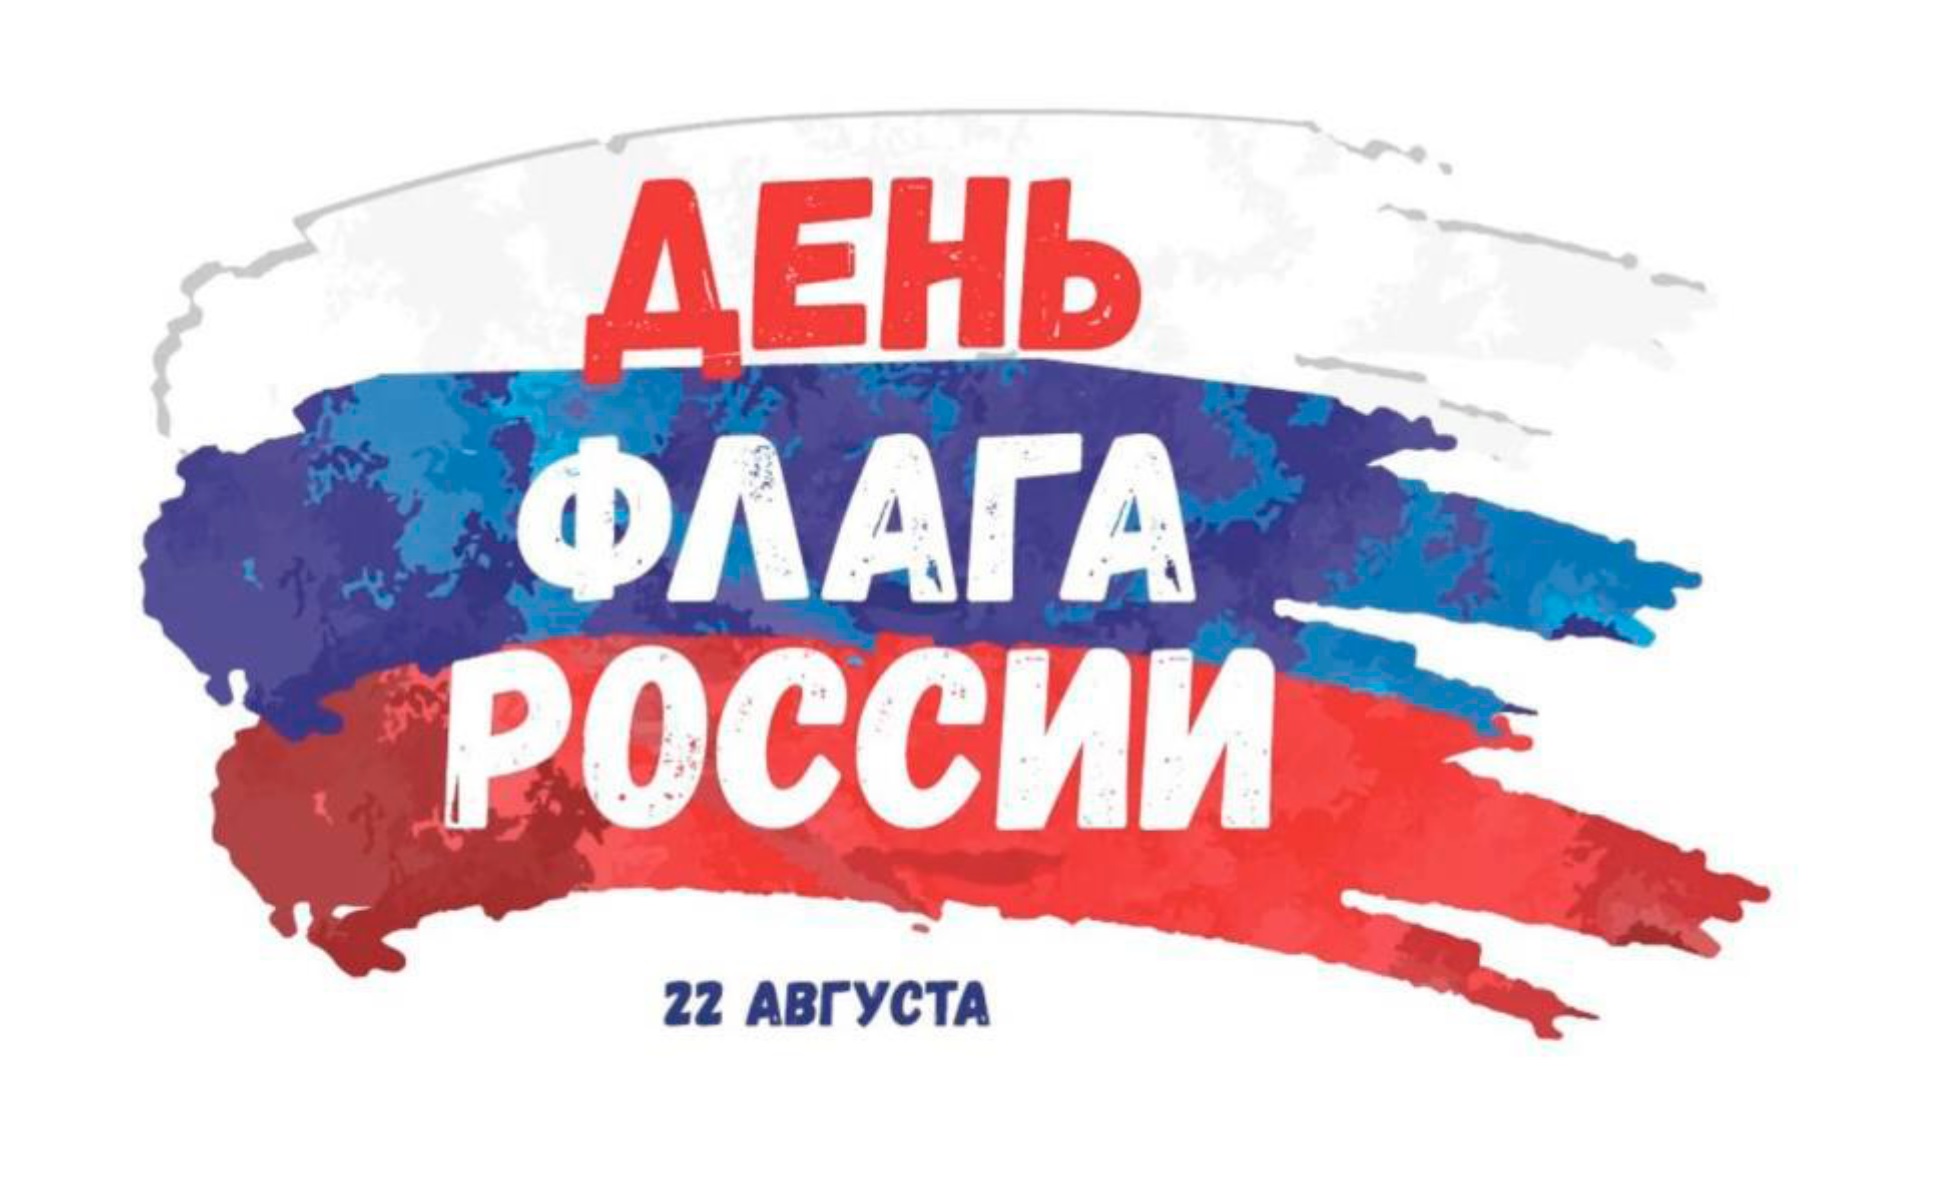 Логотип_День Флага России_22 августа